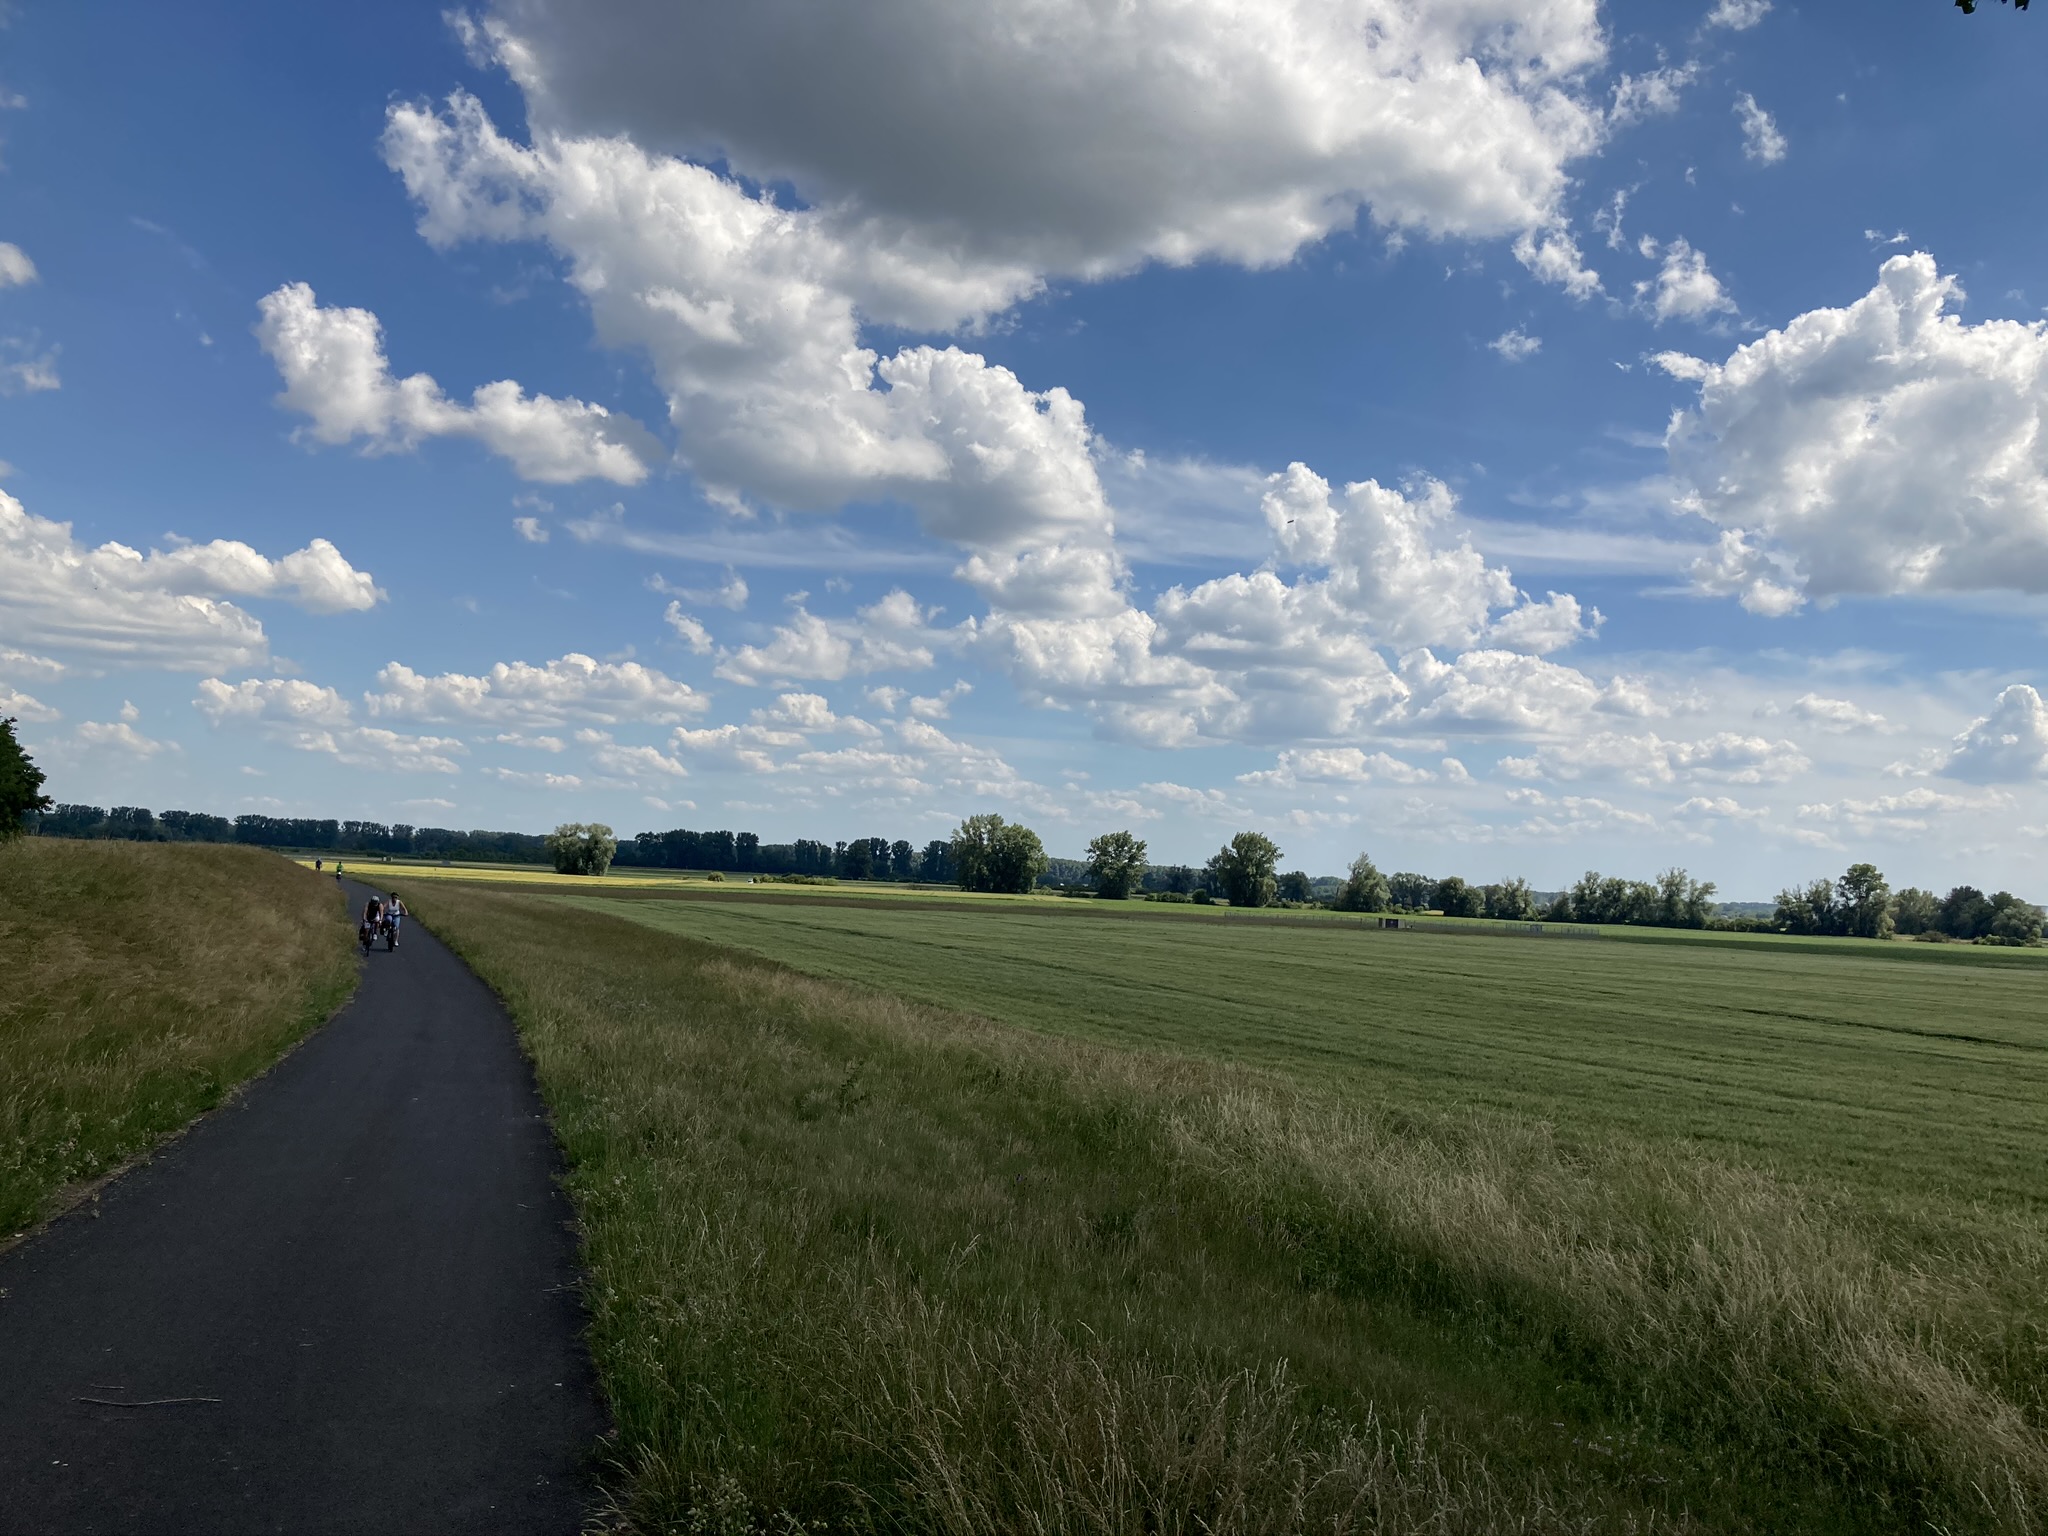 A bike path next to fields